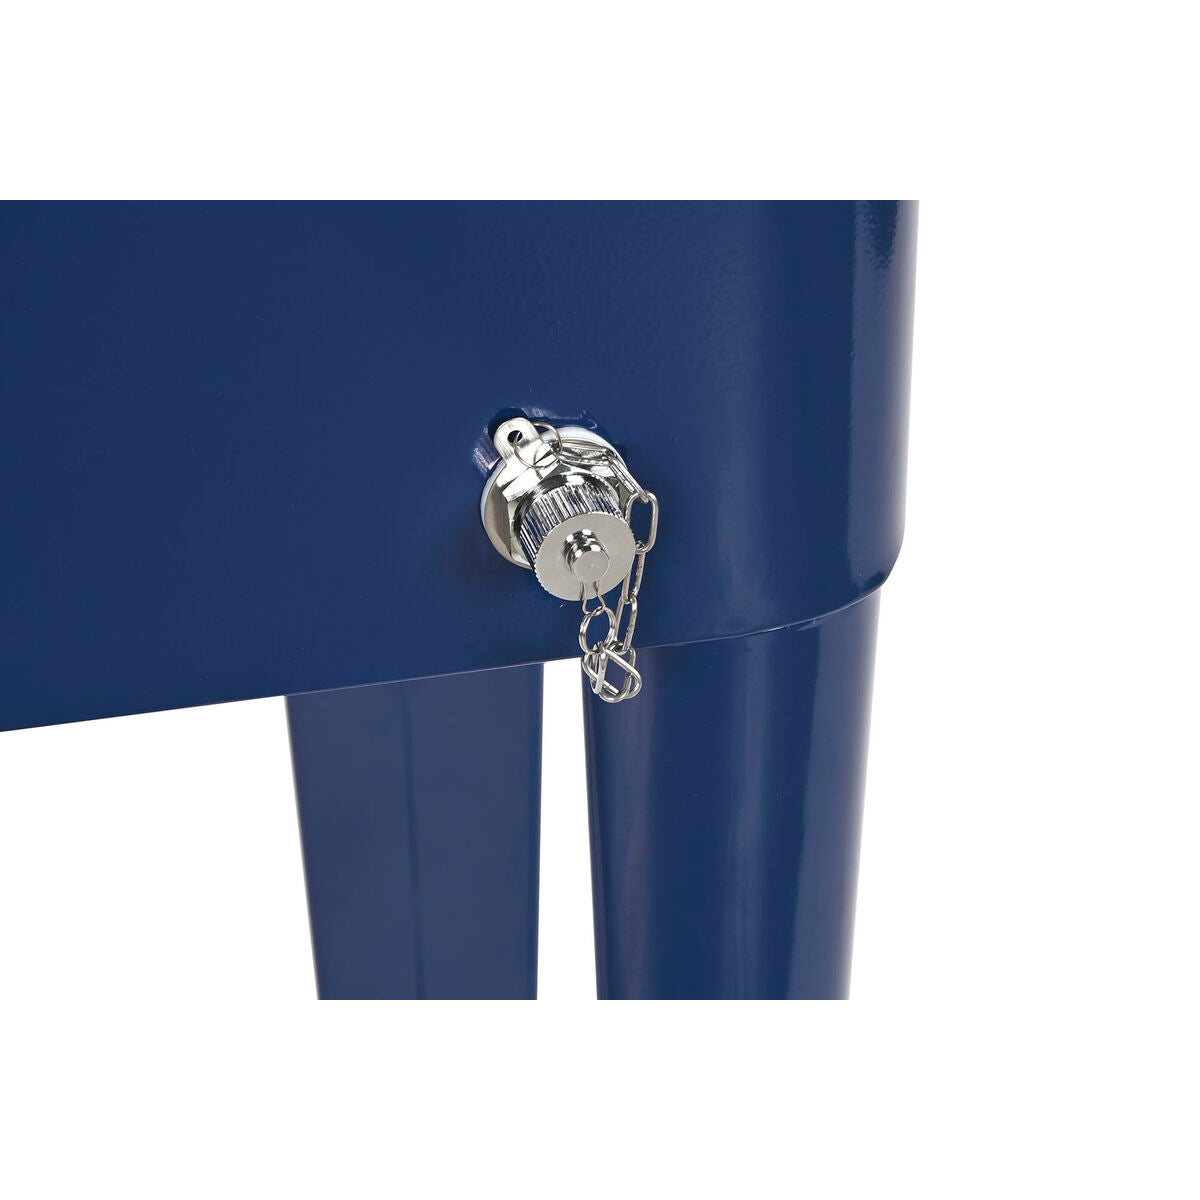 Frigo Portatile Home ESPRIT Blu Marino Acciaio polipropilene 56 L 74 x 43 x 80 cm